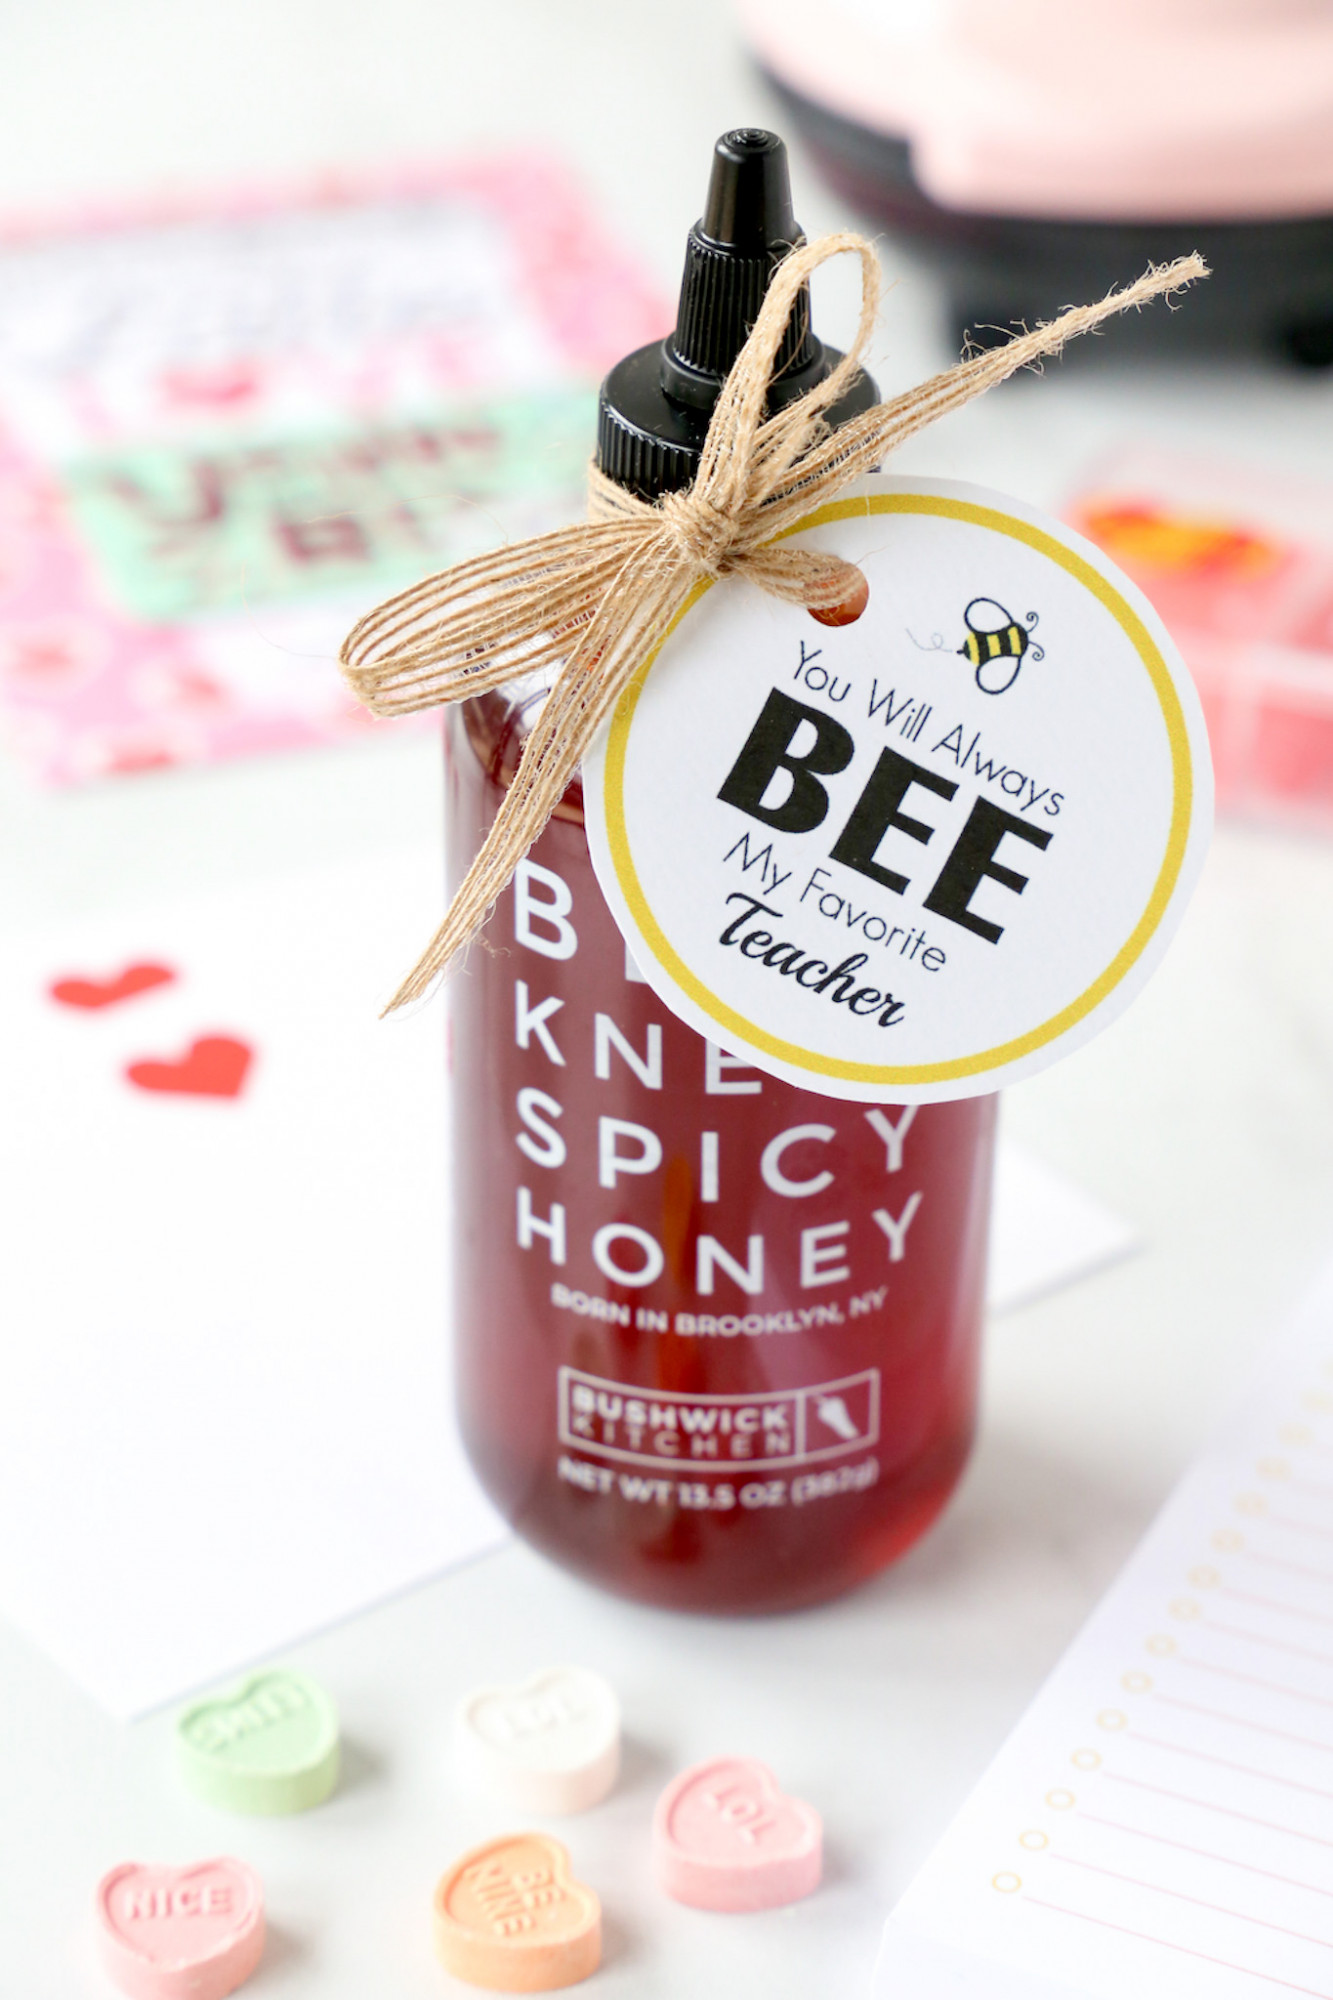 spicy honey gift for teacher